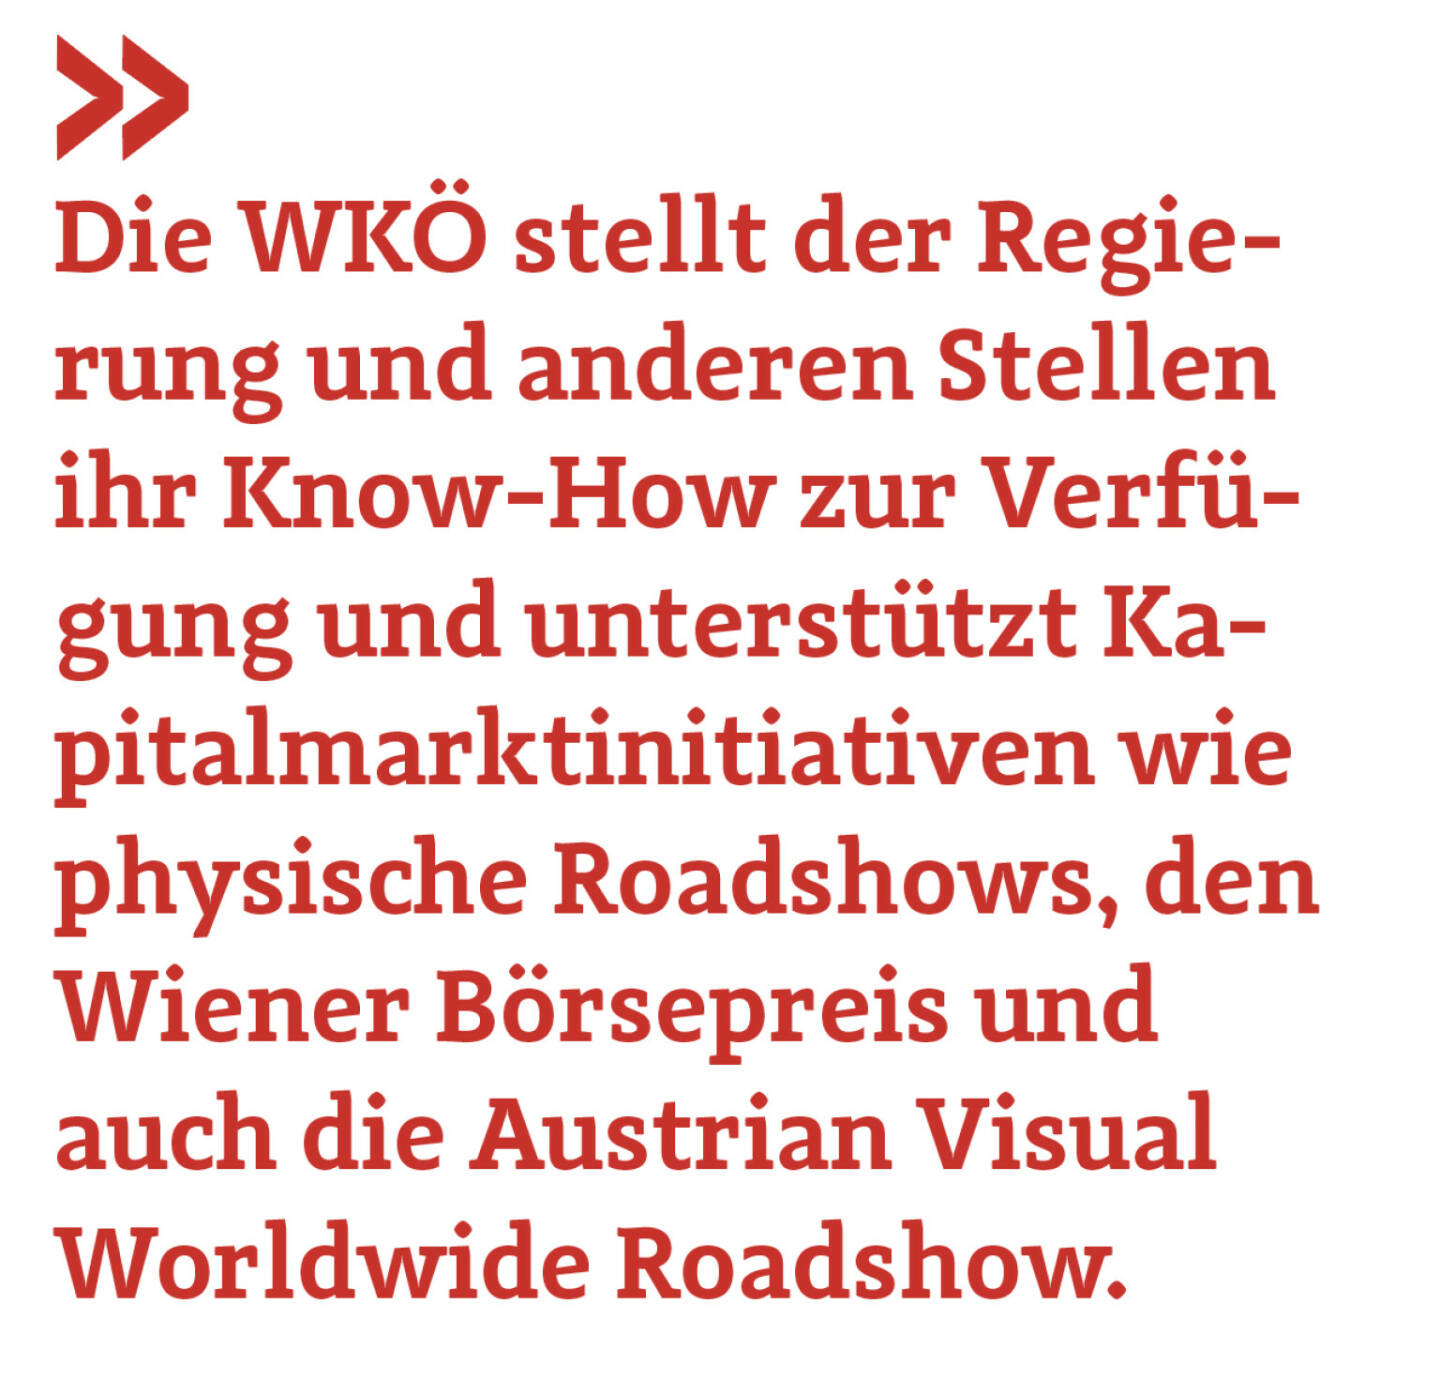 Die WKÖ stellt der Regierung und anderen Stellen ihr Know-How zur Verfügung und unterstützt Kapitalmarktinitiativen wie physische Roadshows, den Wiener Börsepreis und auch die Austrian Visual Worldwide Roadshow. 
Harald Mahrer
